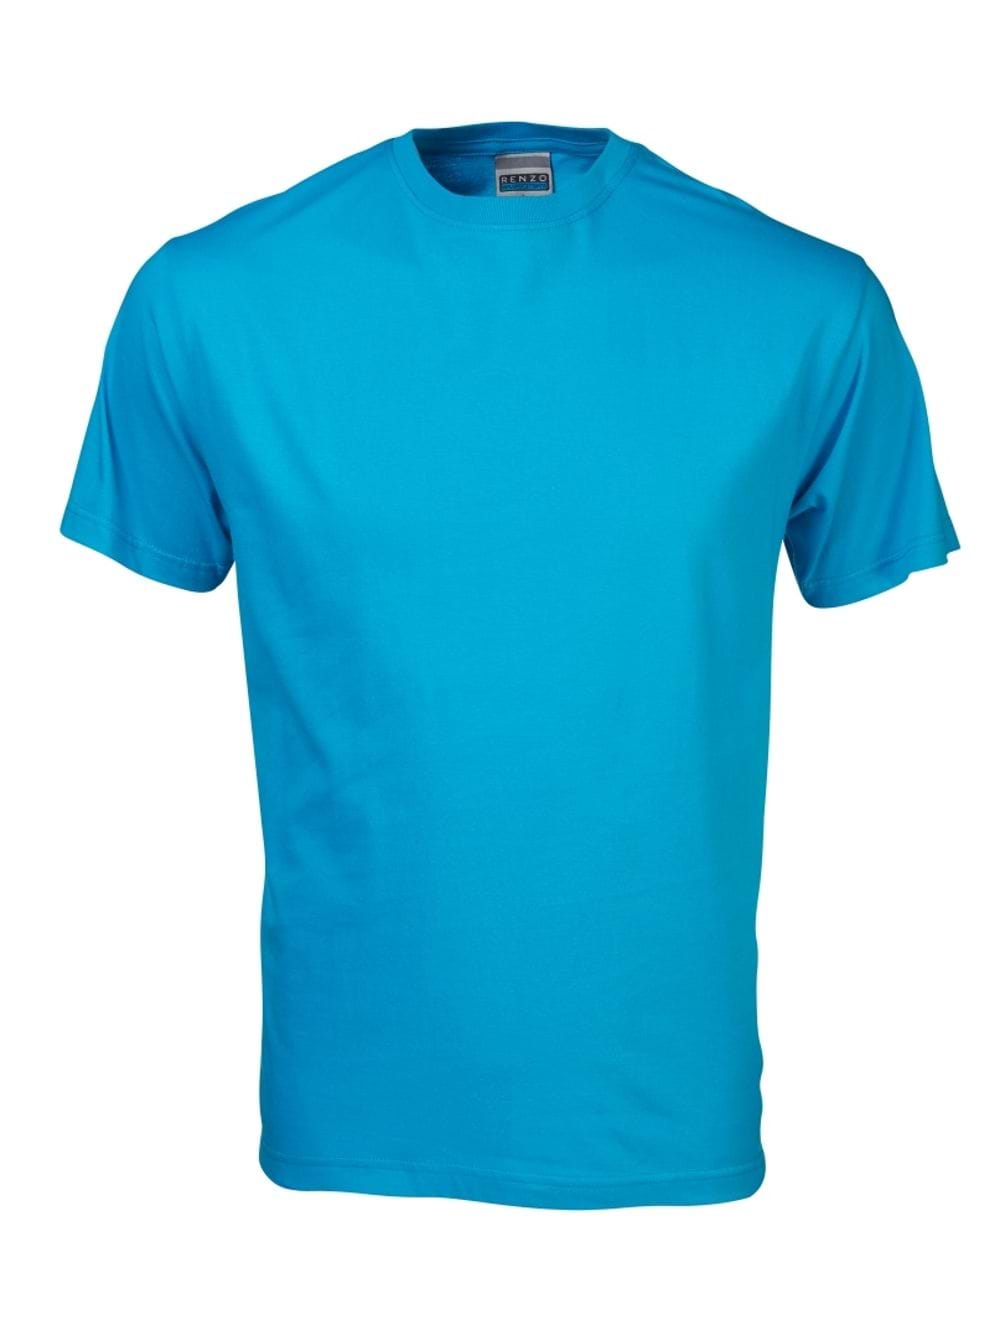 165G Crew Neck T-Shirt - Cyan Blue / XL